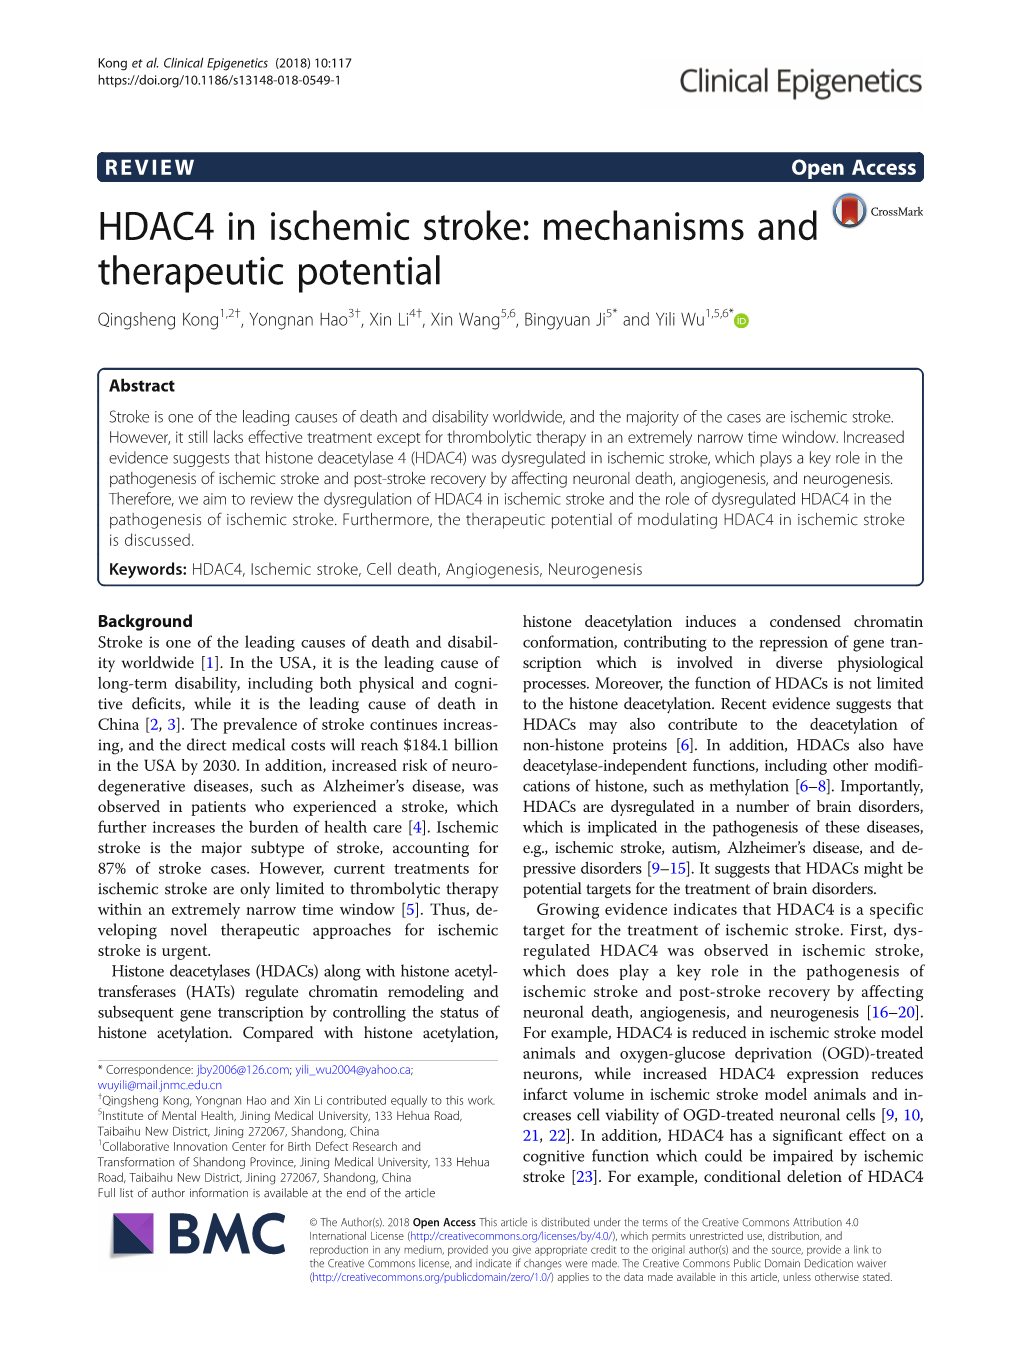 HDAC4 in Ischemic Stroke: Mechanisms and Therapeutic Potential Qingsheng Kong1,2†, Yongnan Hao3†, Xin Li4†, Xin Wang5,6, Bingyuan Ji5* and Yili Wu1,5,6*